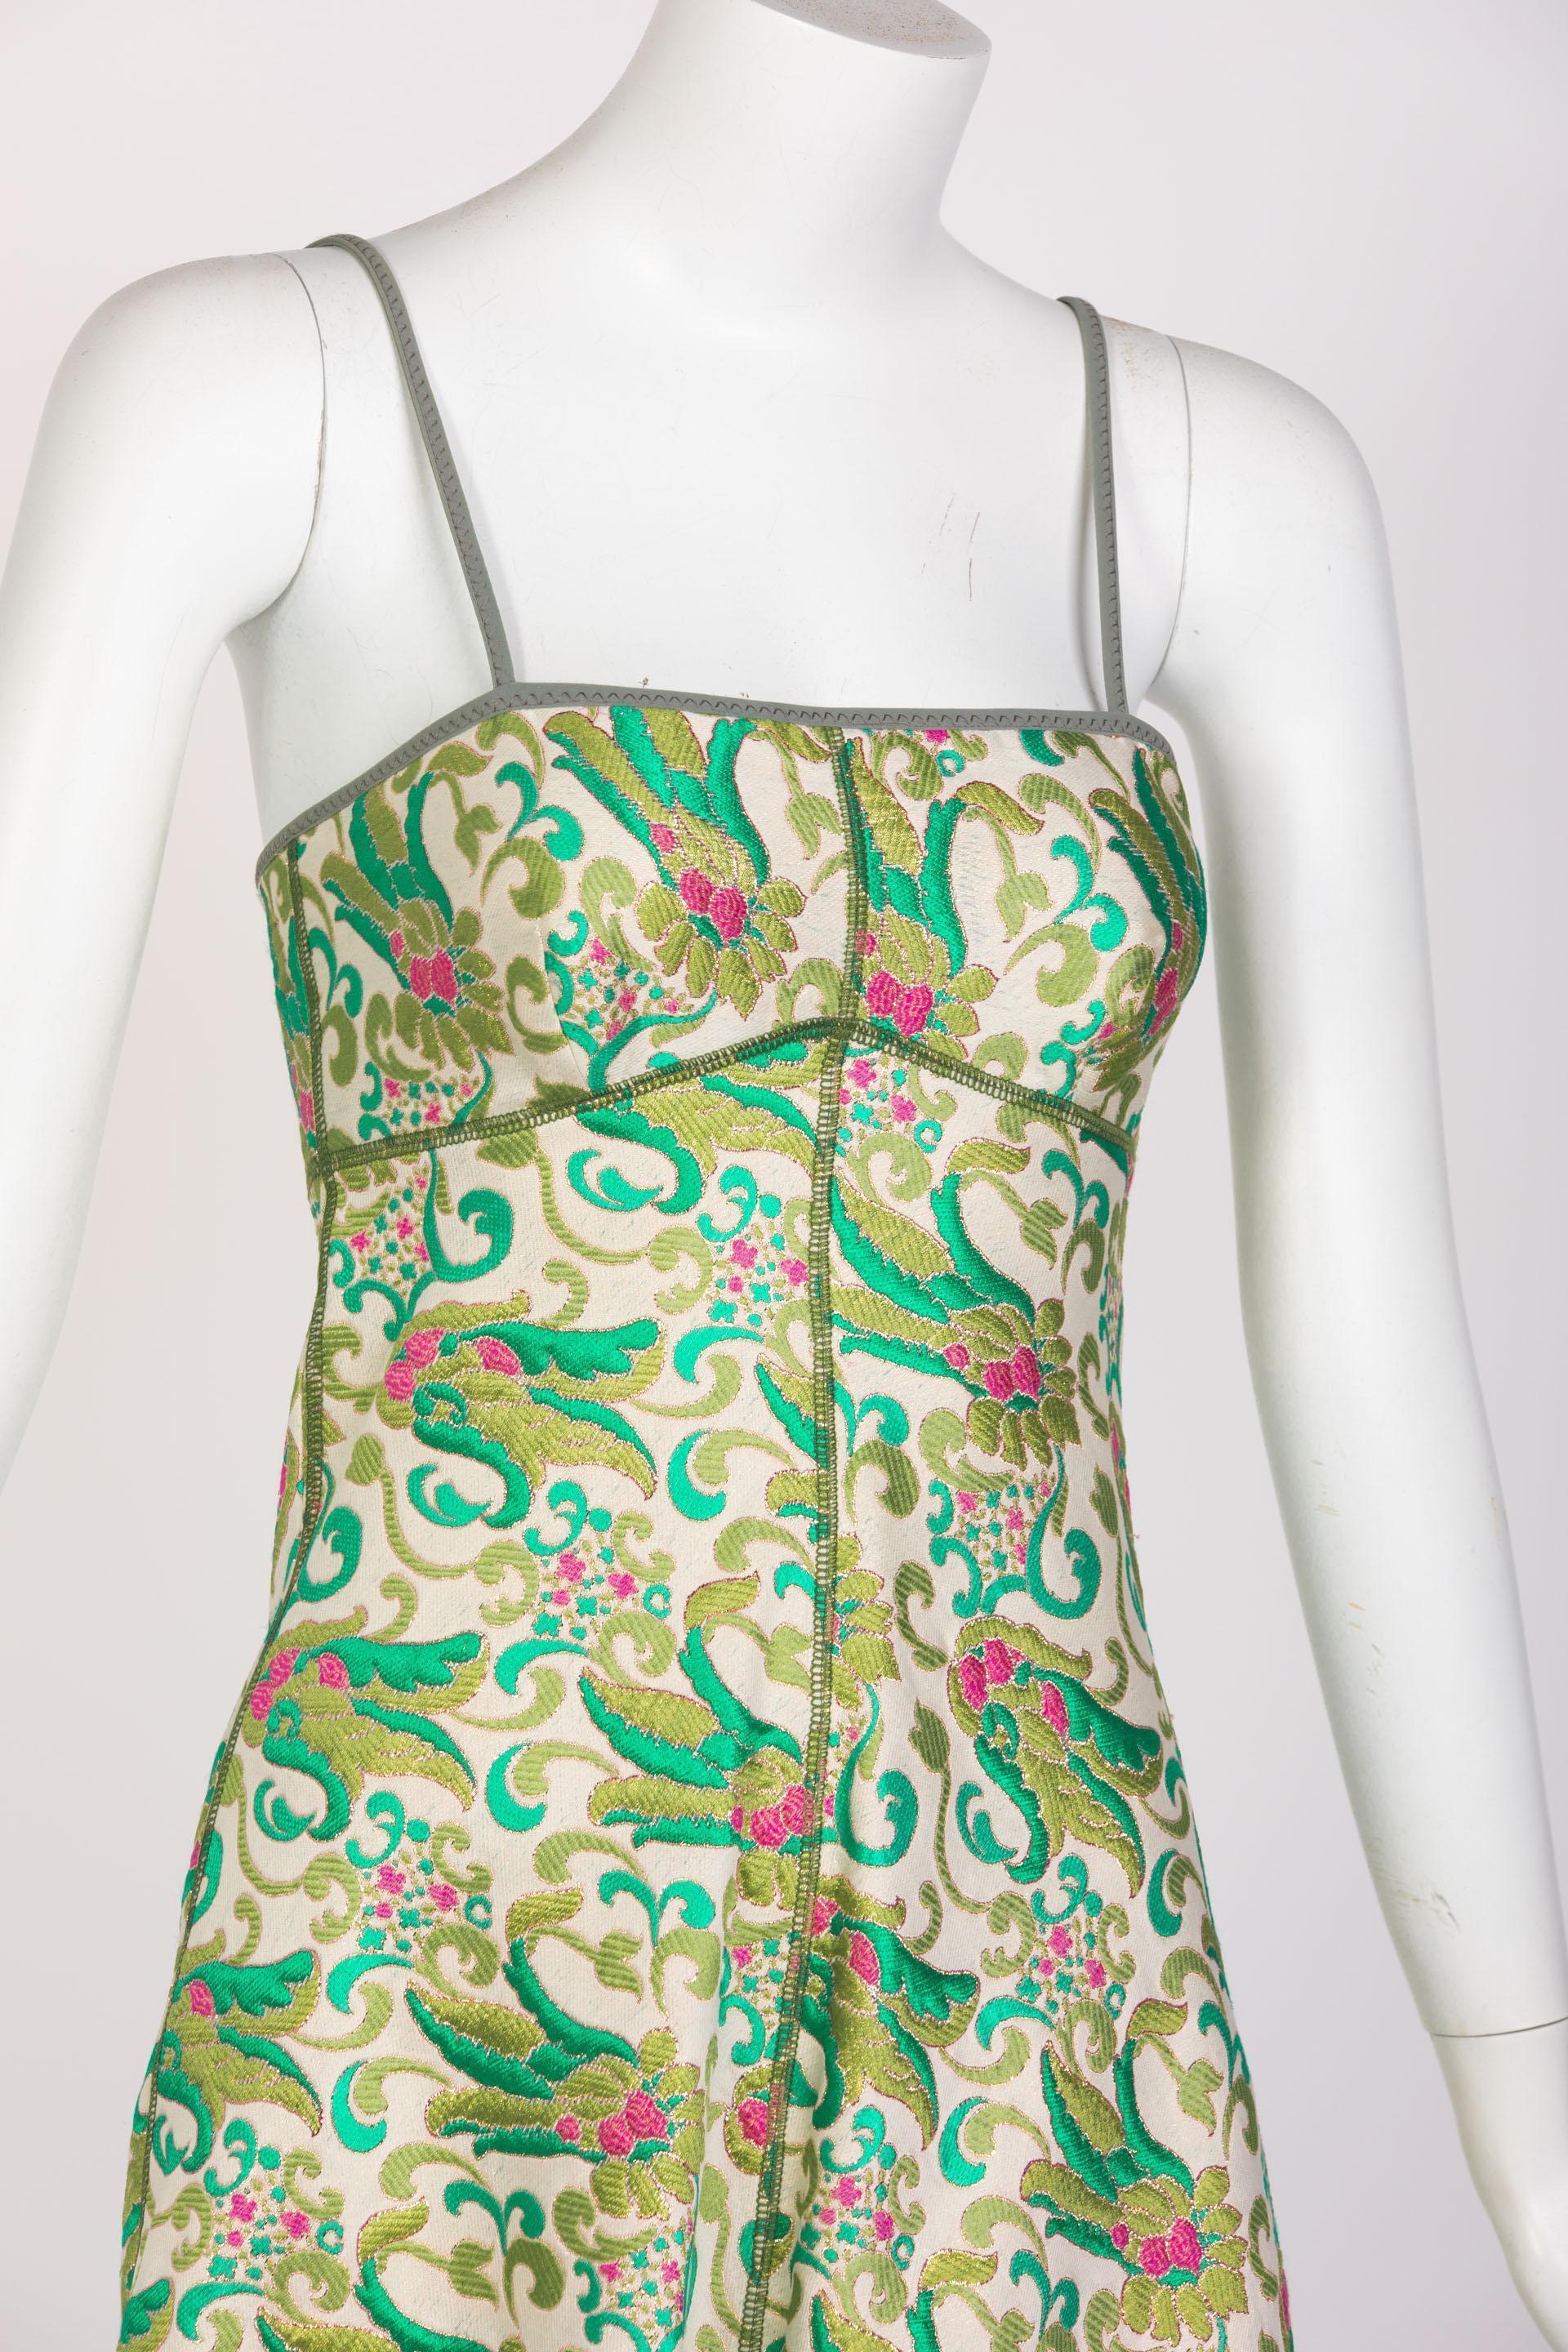  Prada Green Brocade A-Line Sleeveless Dress Spring 2003 For Sale 1